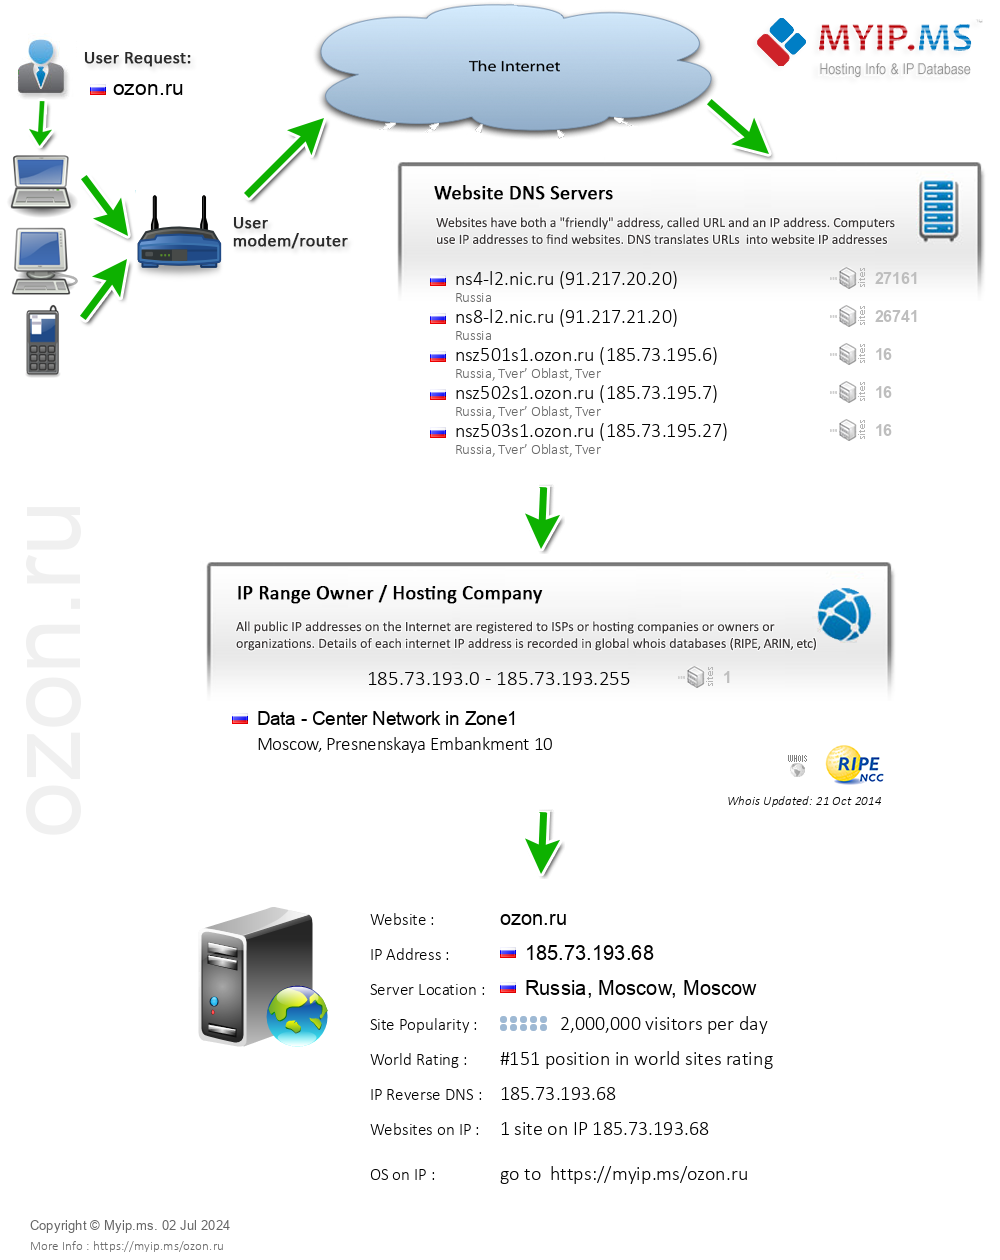 Ozon.ru - Website Hosting Visual IP Diagram